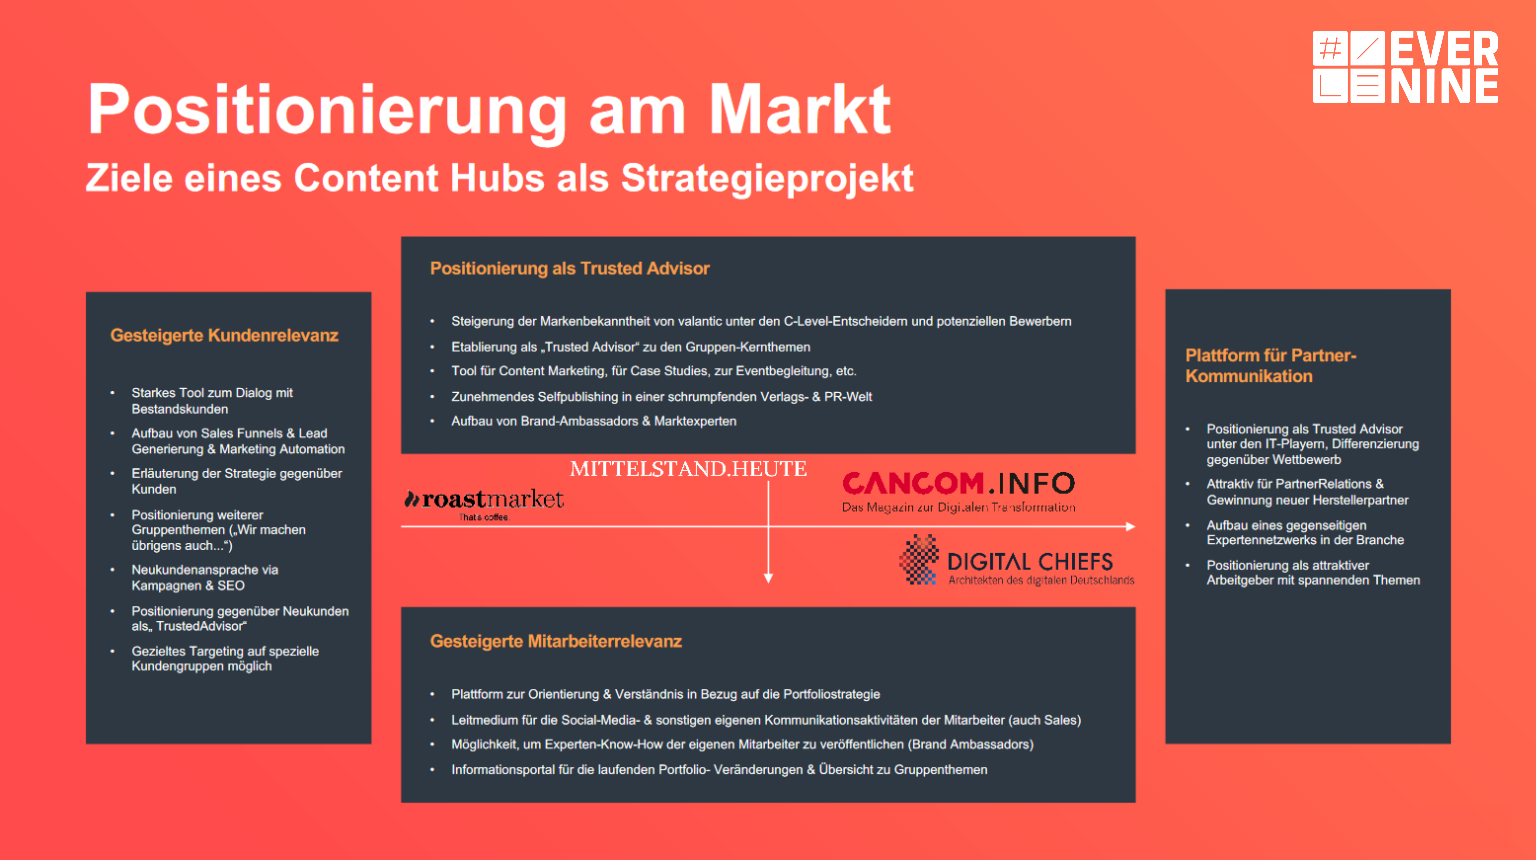 content-hub-evernine-marktpositionierung-branded